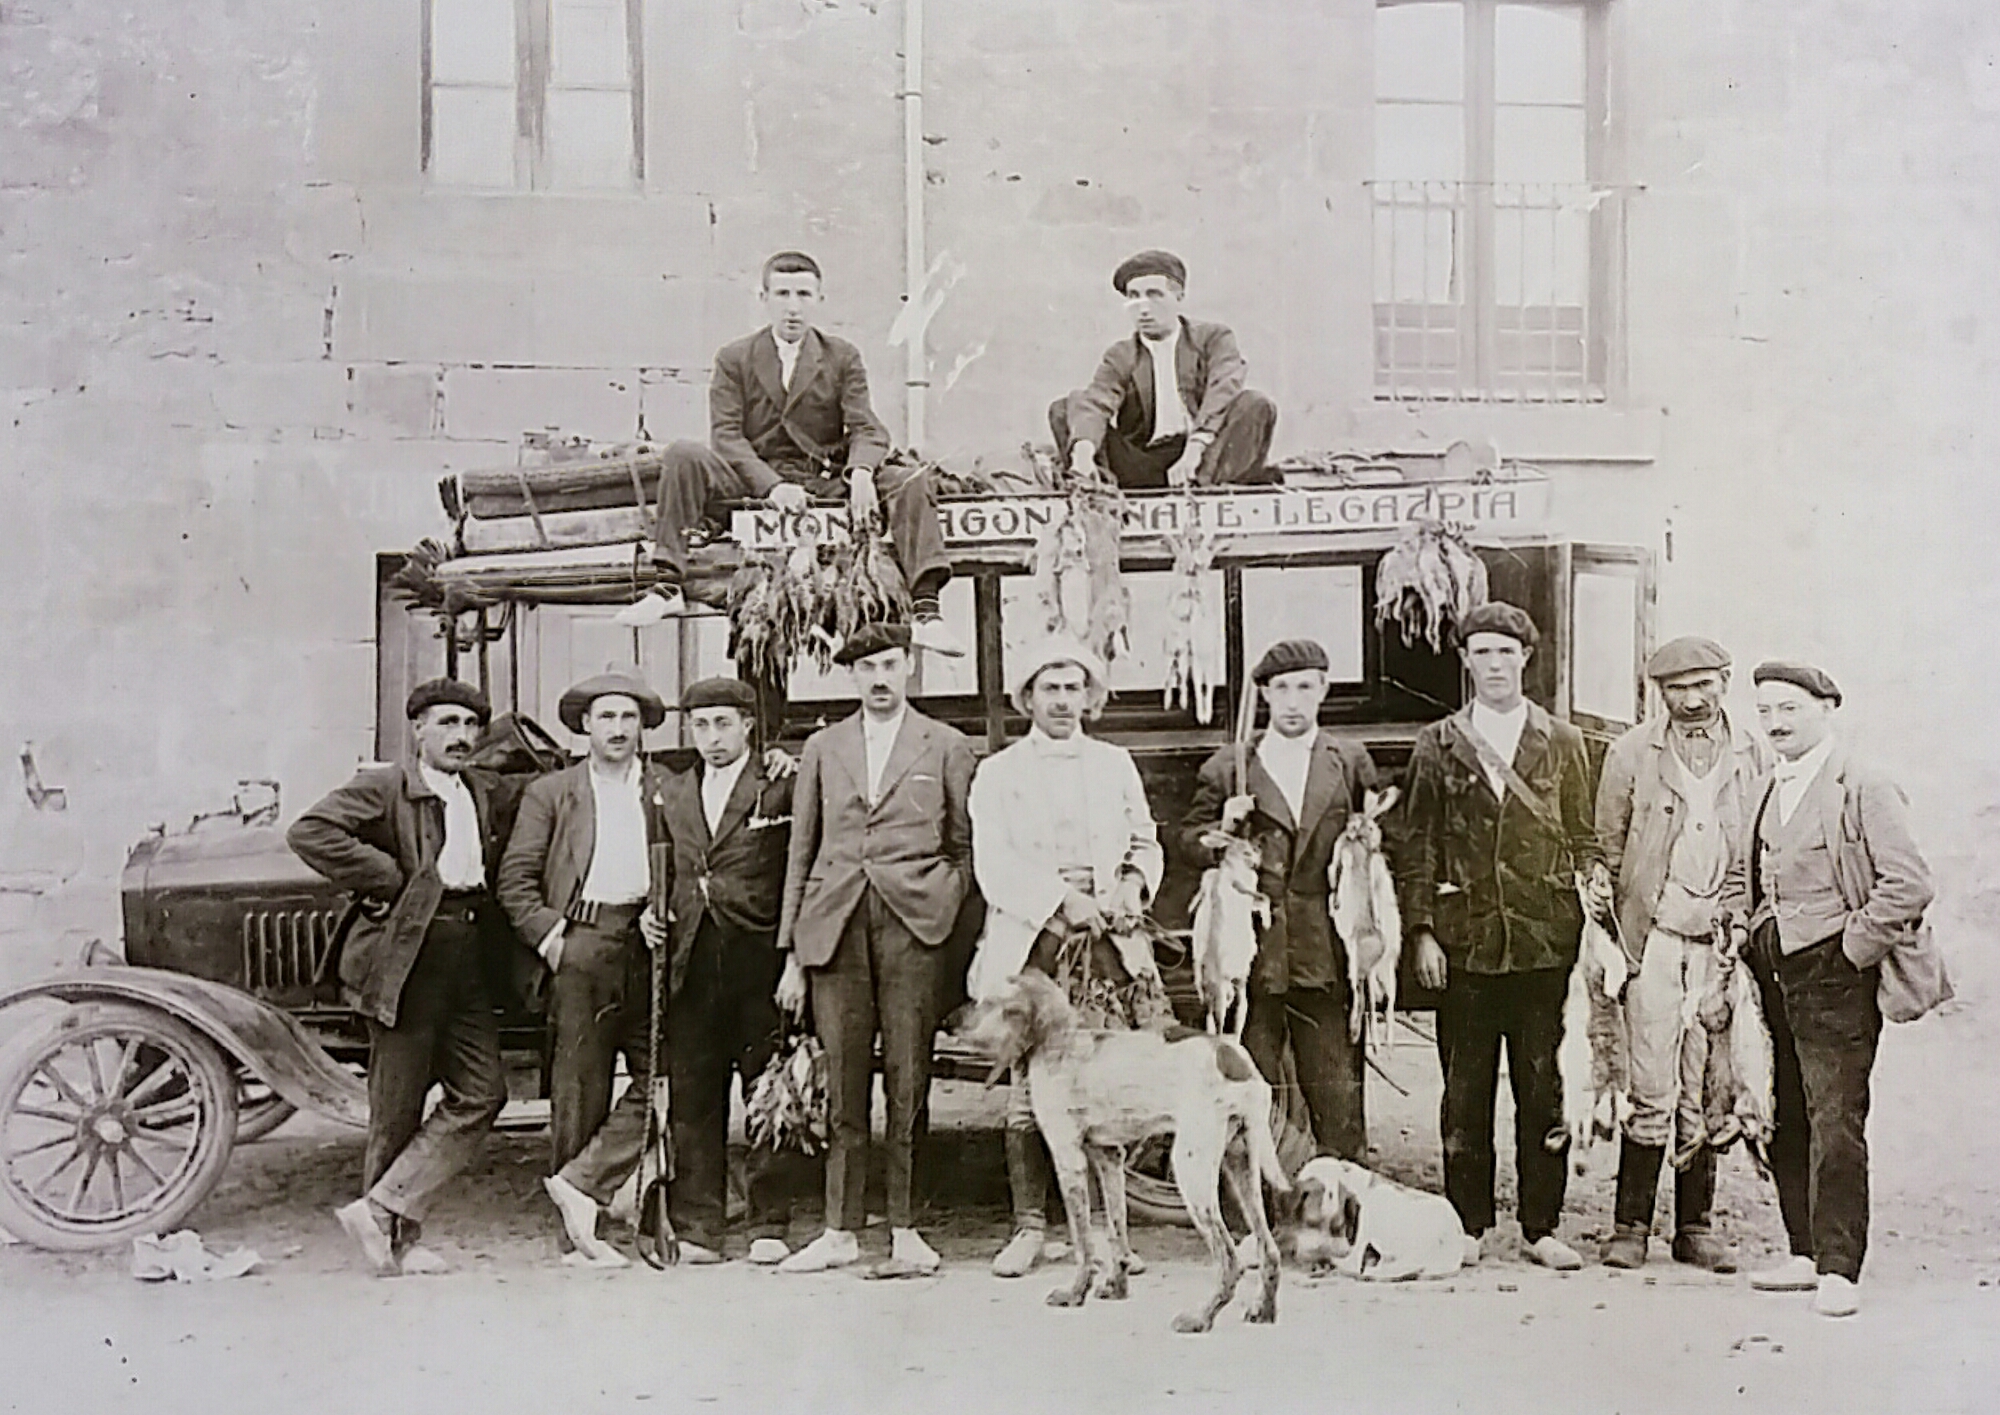 Eibarko ehiztari eta armagin talde bat, 1920 (Castrillo Ortuoste)